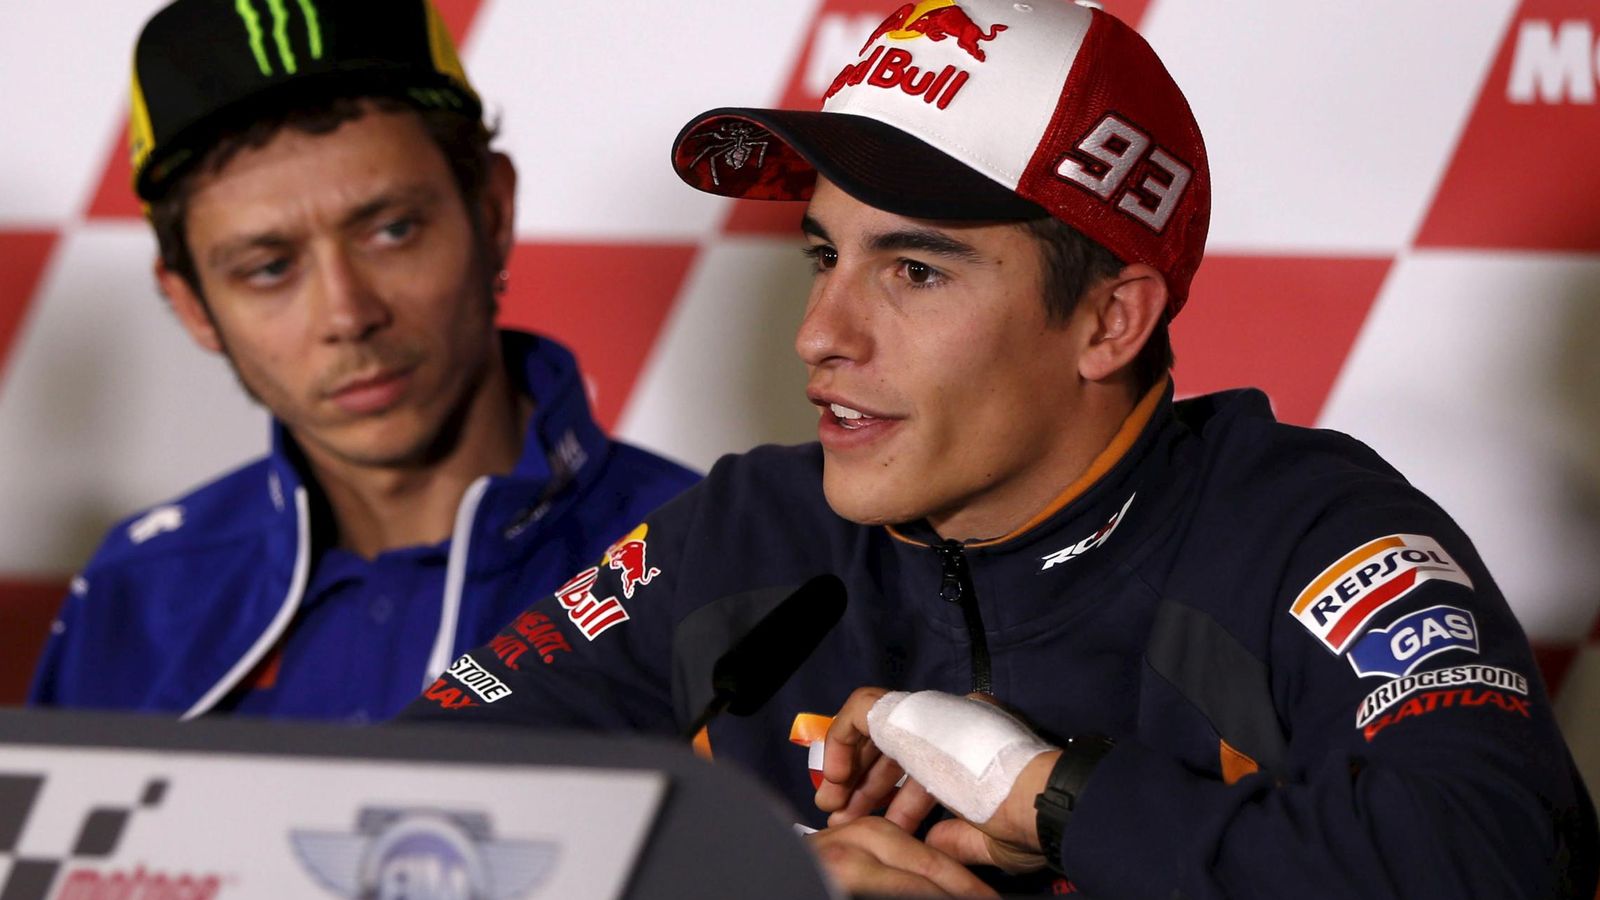 Foto: Roddi observa a Márquez en una rueda de prensa (Reuters). 